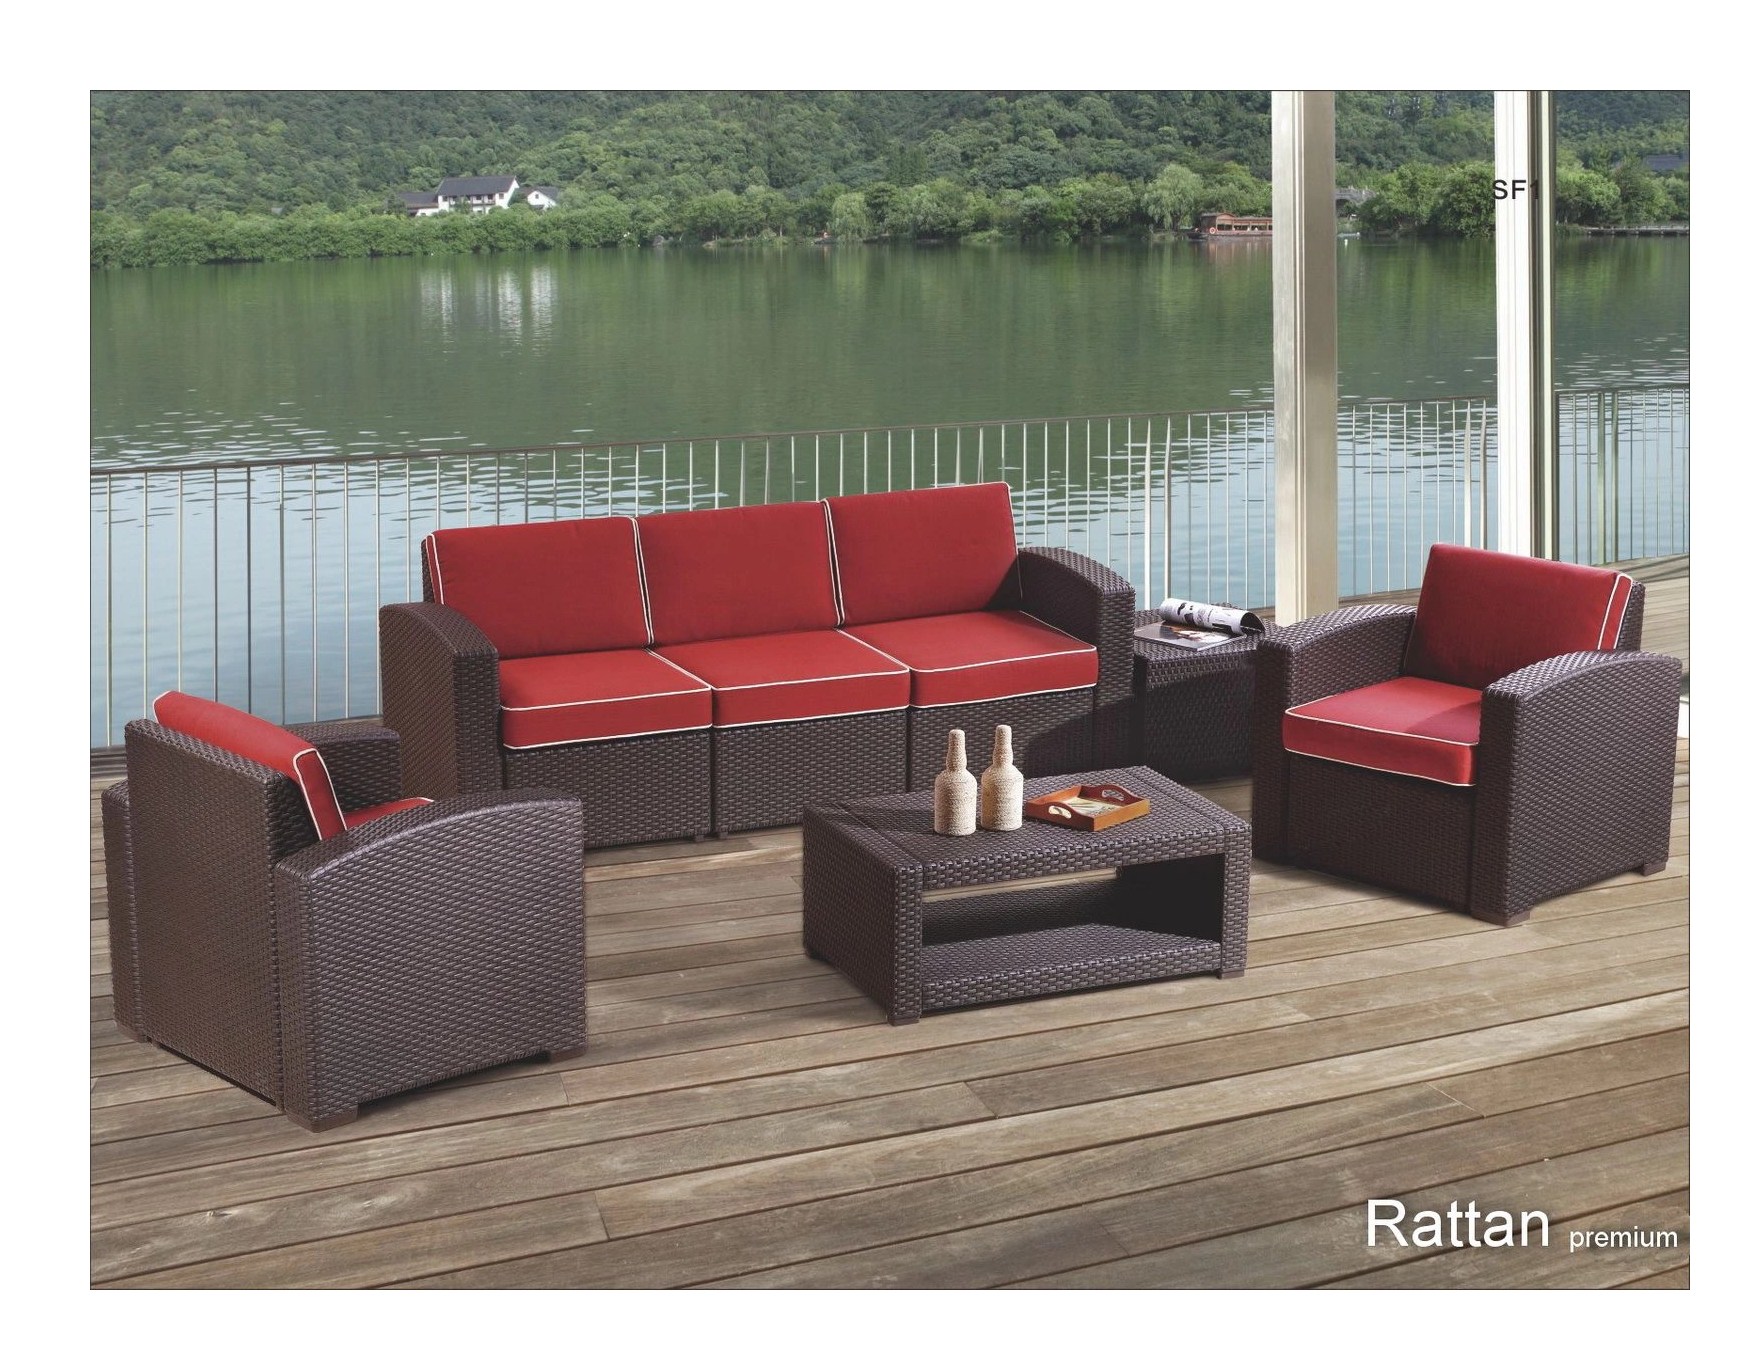 Купить мебель из ротанга искусственного недорого. Комплект мебели Rattan Premium 5. Комплект мебели Rattan Premium 5, венге. Комплект мебели Rattan Premium 5, серый. Садовая мебель Rattan Comfort 5.